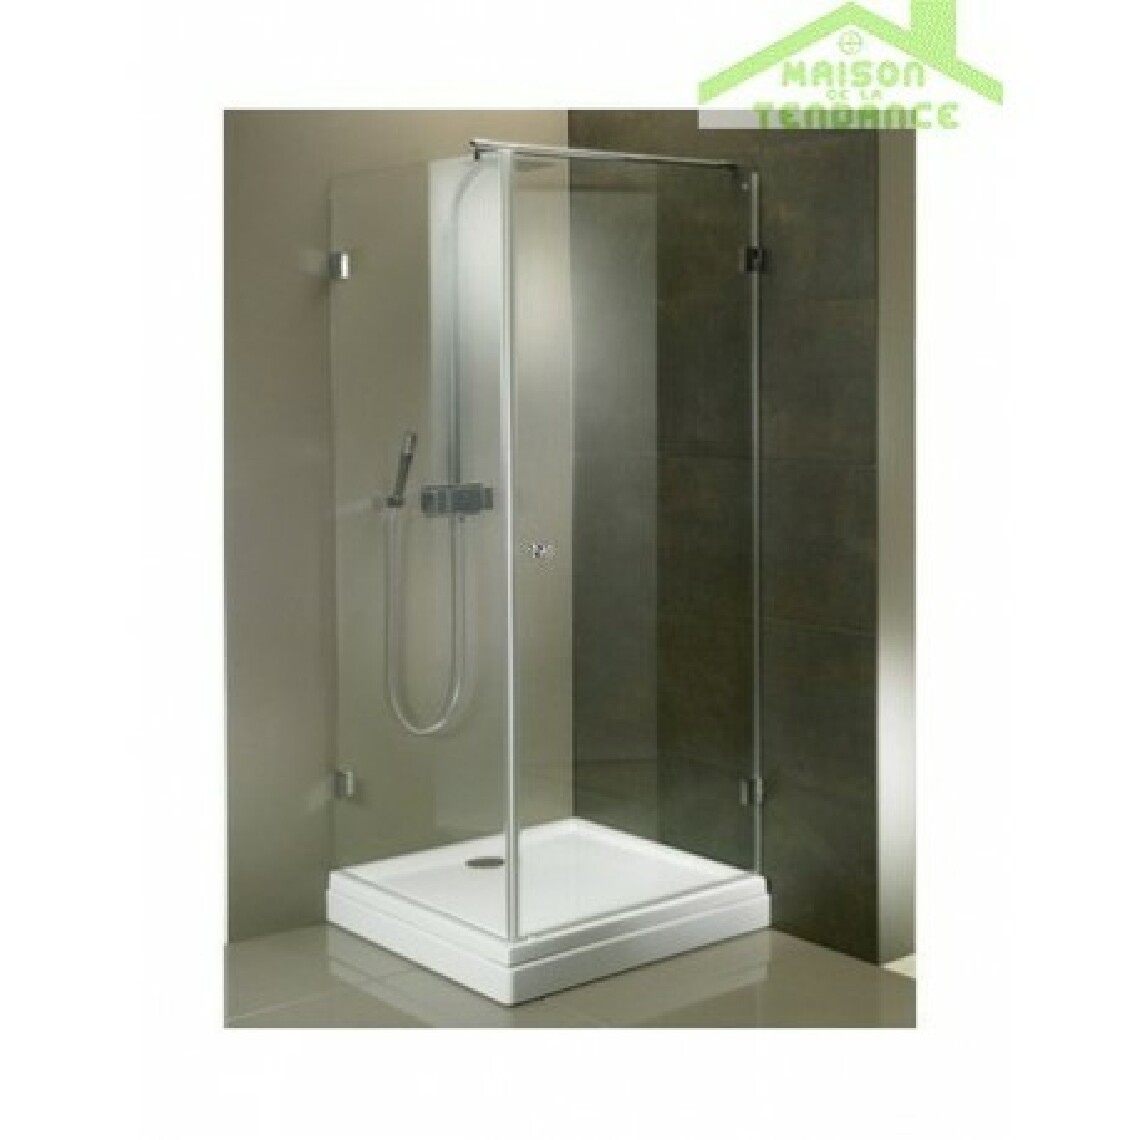 Riho - Parois de douche universelle RIHO SCANDIC MISTRAL M201 en verre clair - Cabine de douche